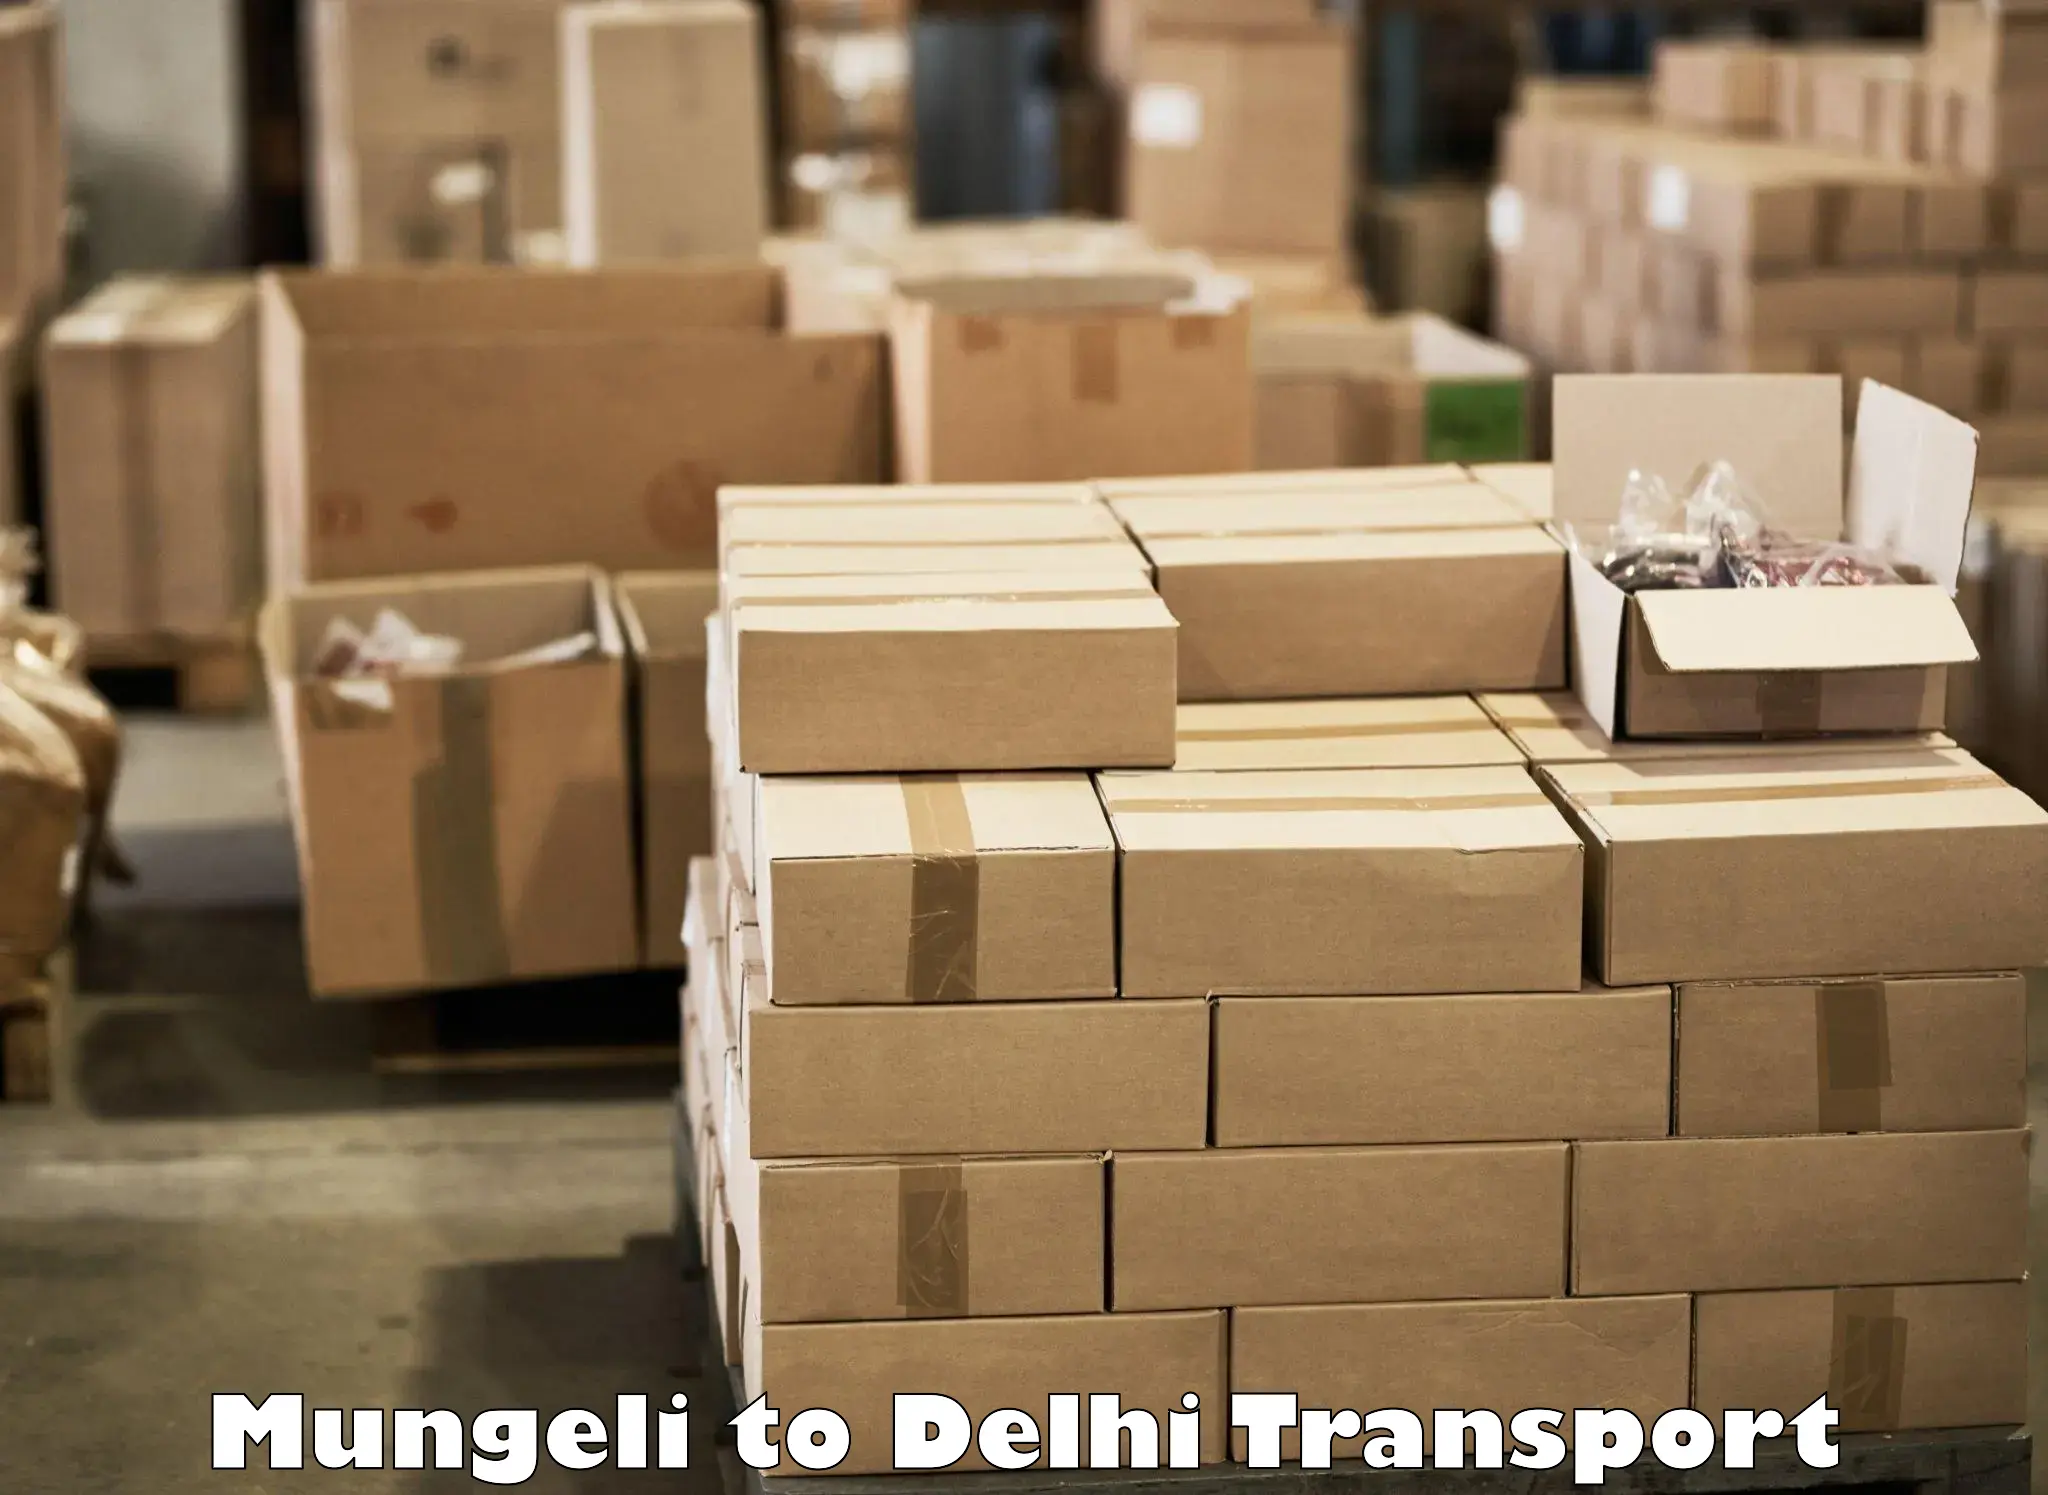 Container transport service Mungeli to IIT Delhi